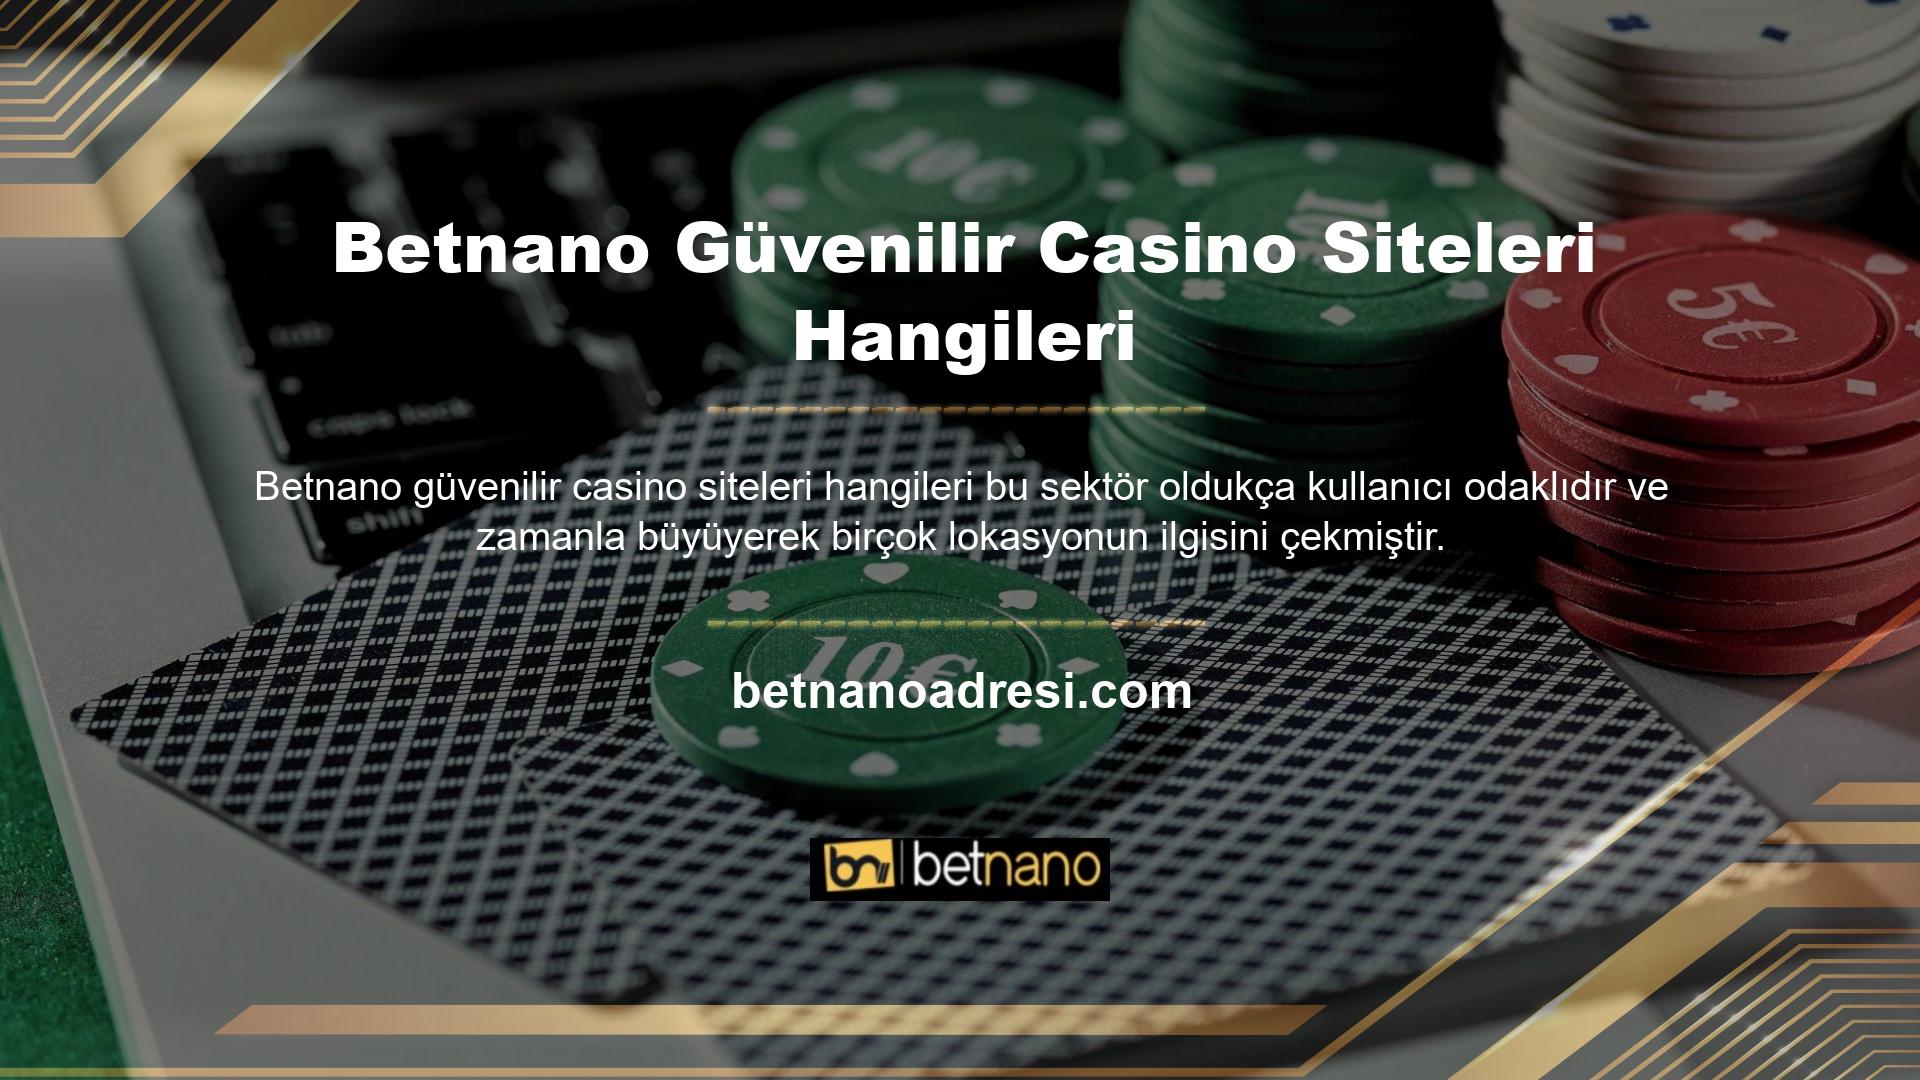 Bu casino sitelerinin güvenilirliği yabancı lisans şirketleri tarafından lisanslanmış olmasından kaynaklanmaktadır